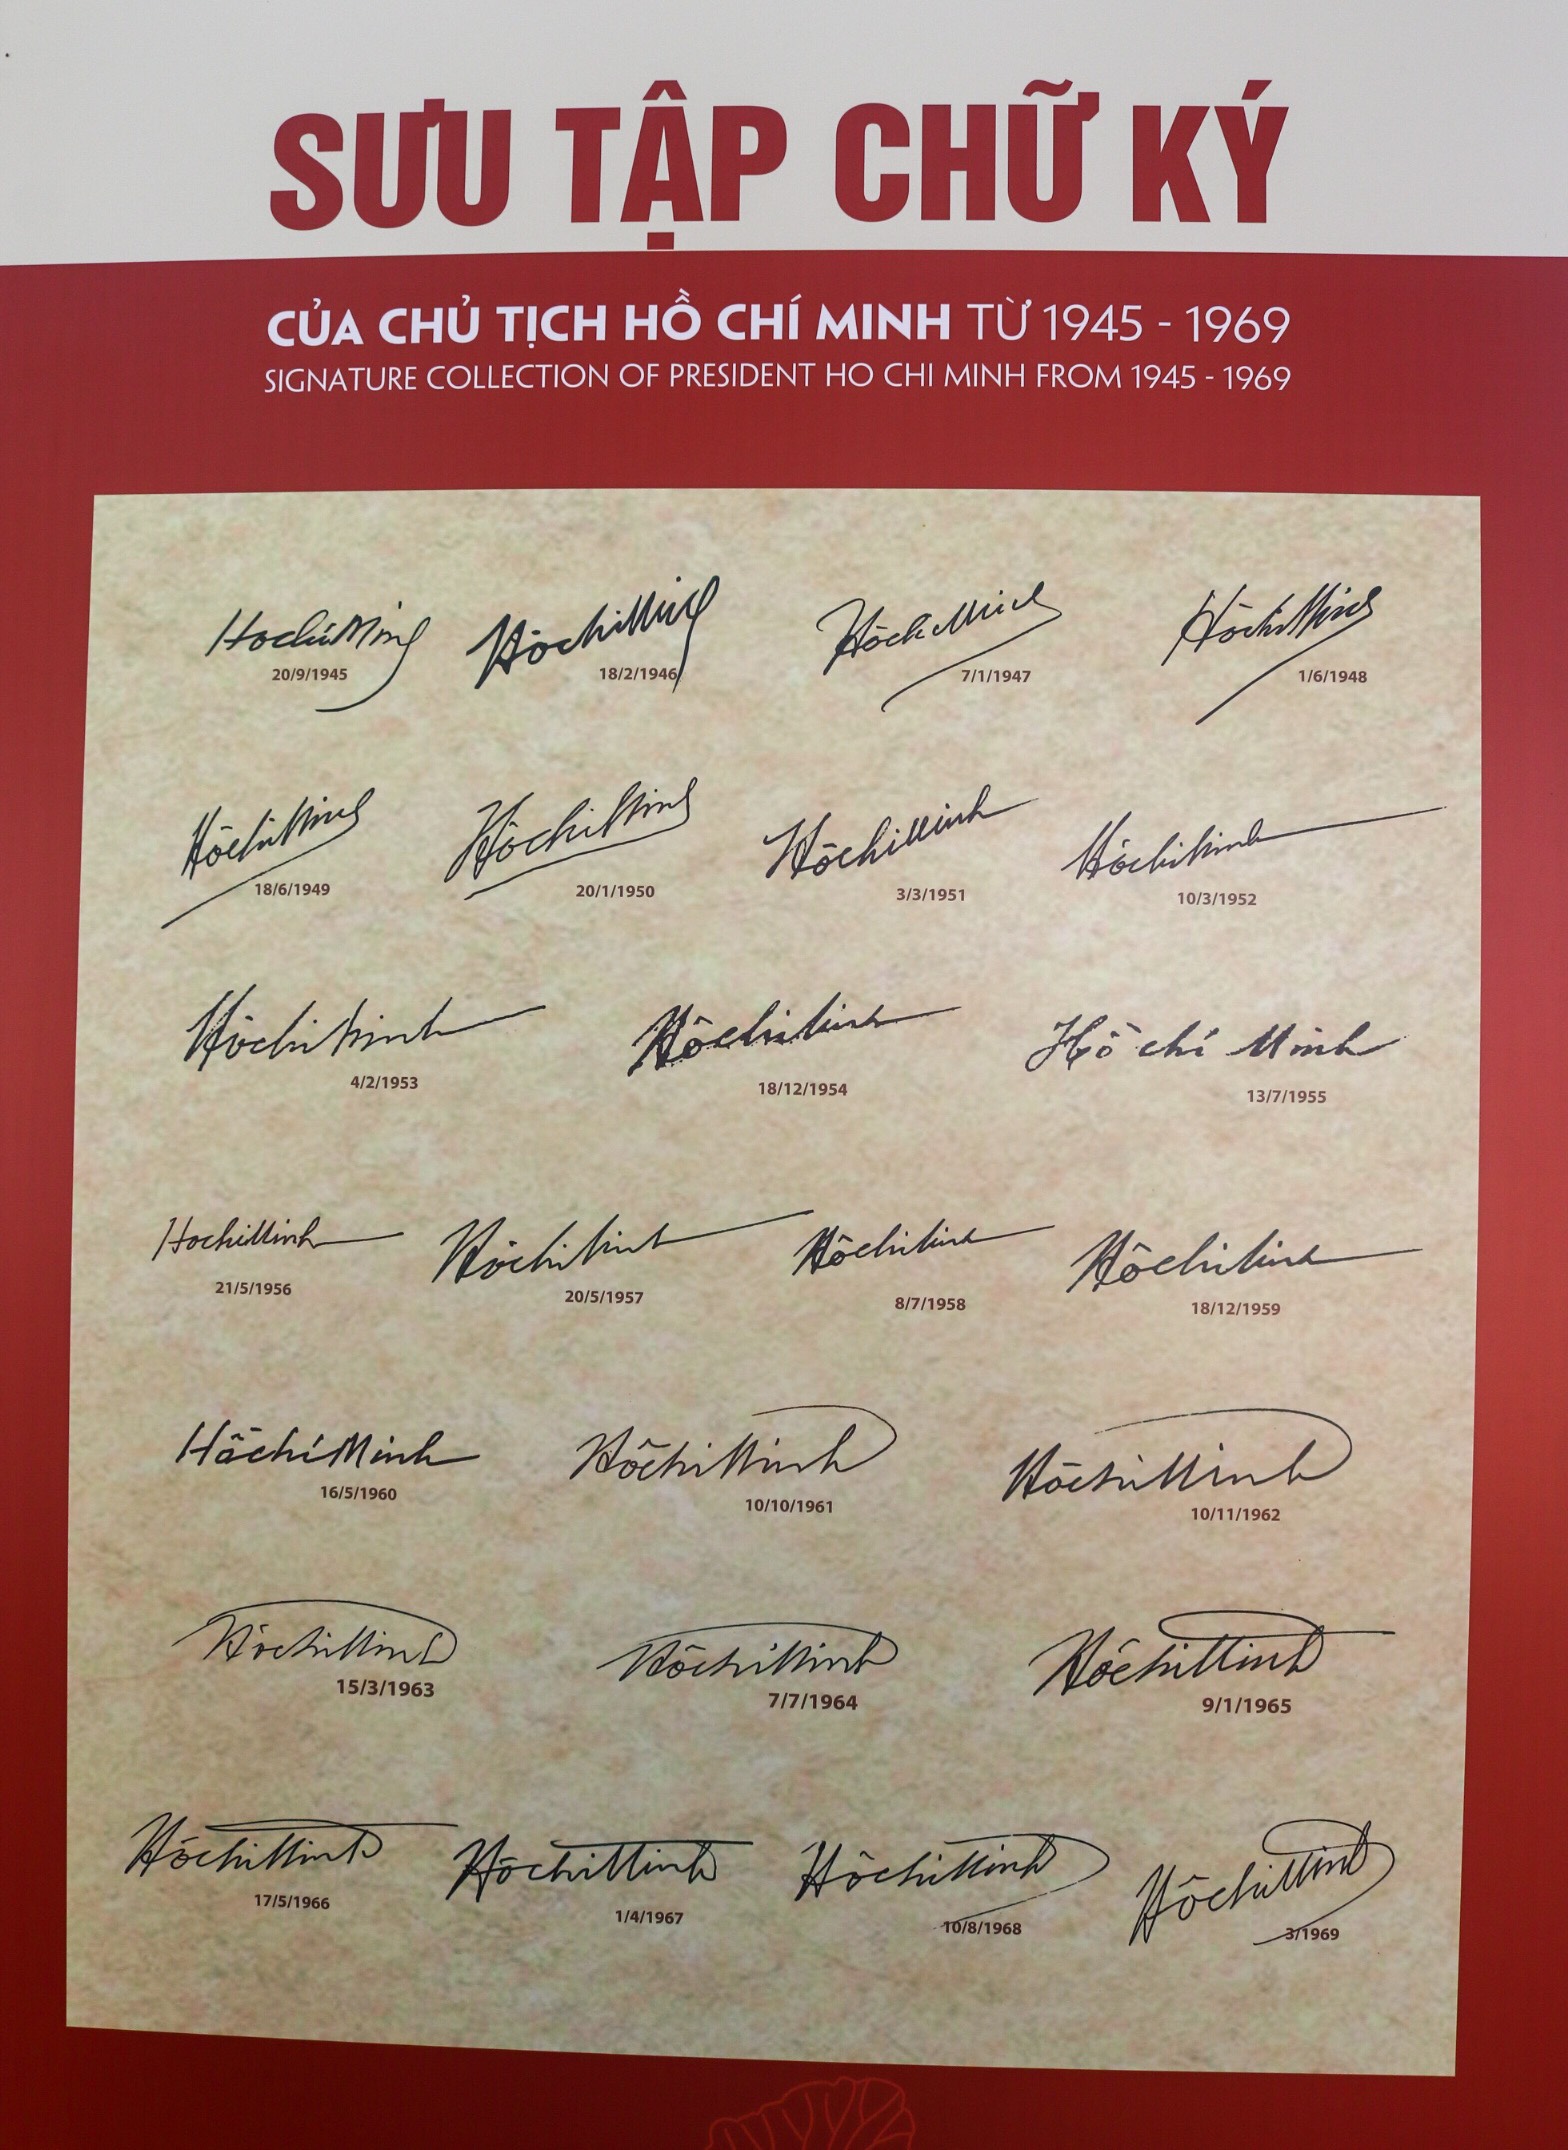 Trưng bày chữ ký và bút tích của Chủ tịch Hồ Chí Minh giai đoạn 1945 - 1969 - Ảnh 3.